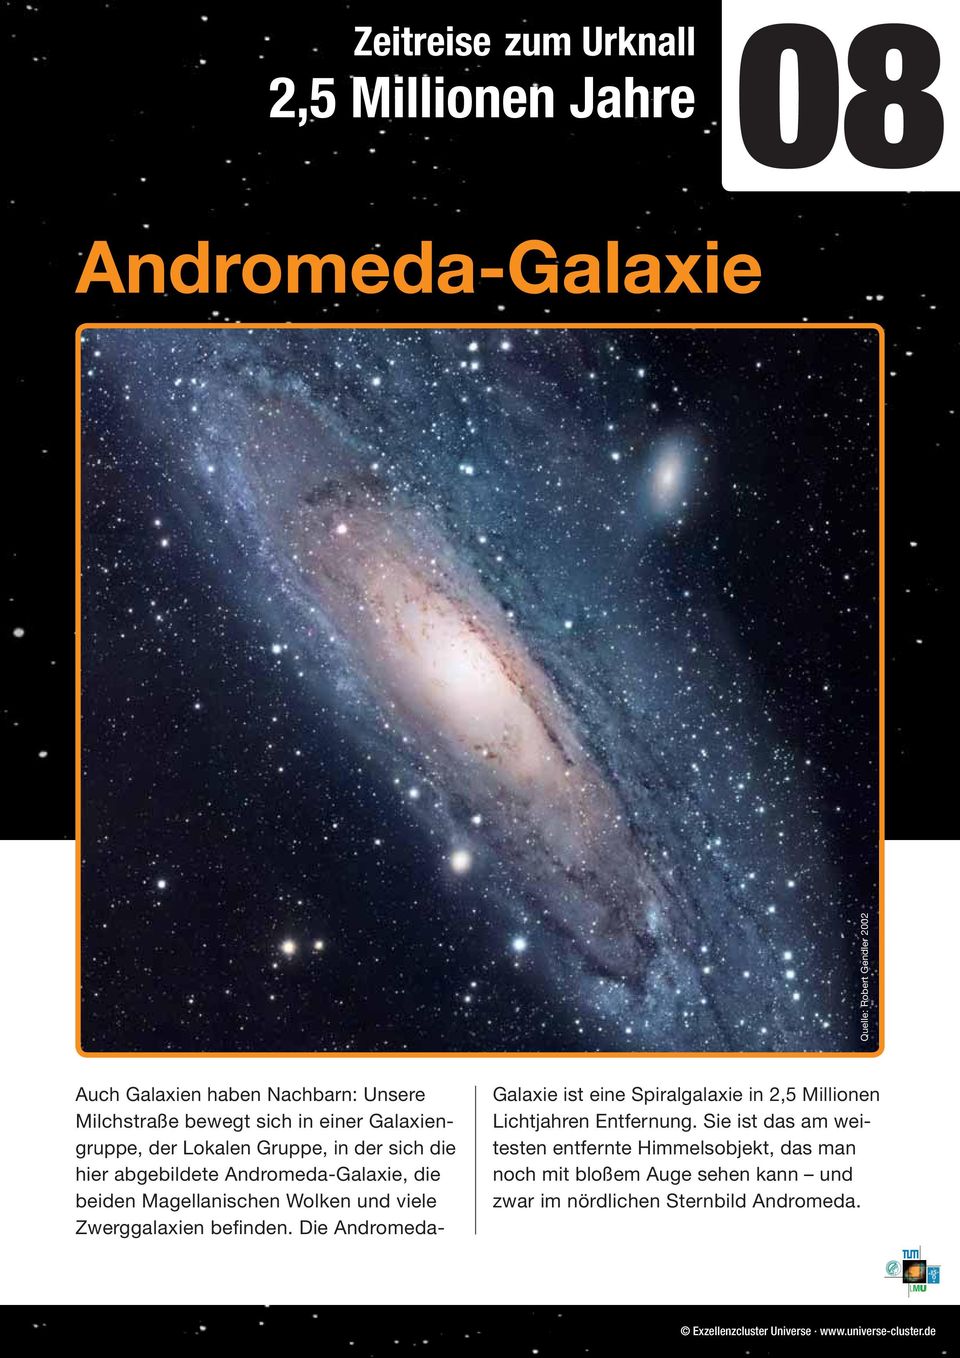 und viele Zwerggalaxien befinden. Die Andromeda- Galaxie ist eine Spiralgalaxie in 2,5 Millionen Lichtjahren Entfernung.